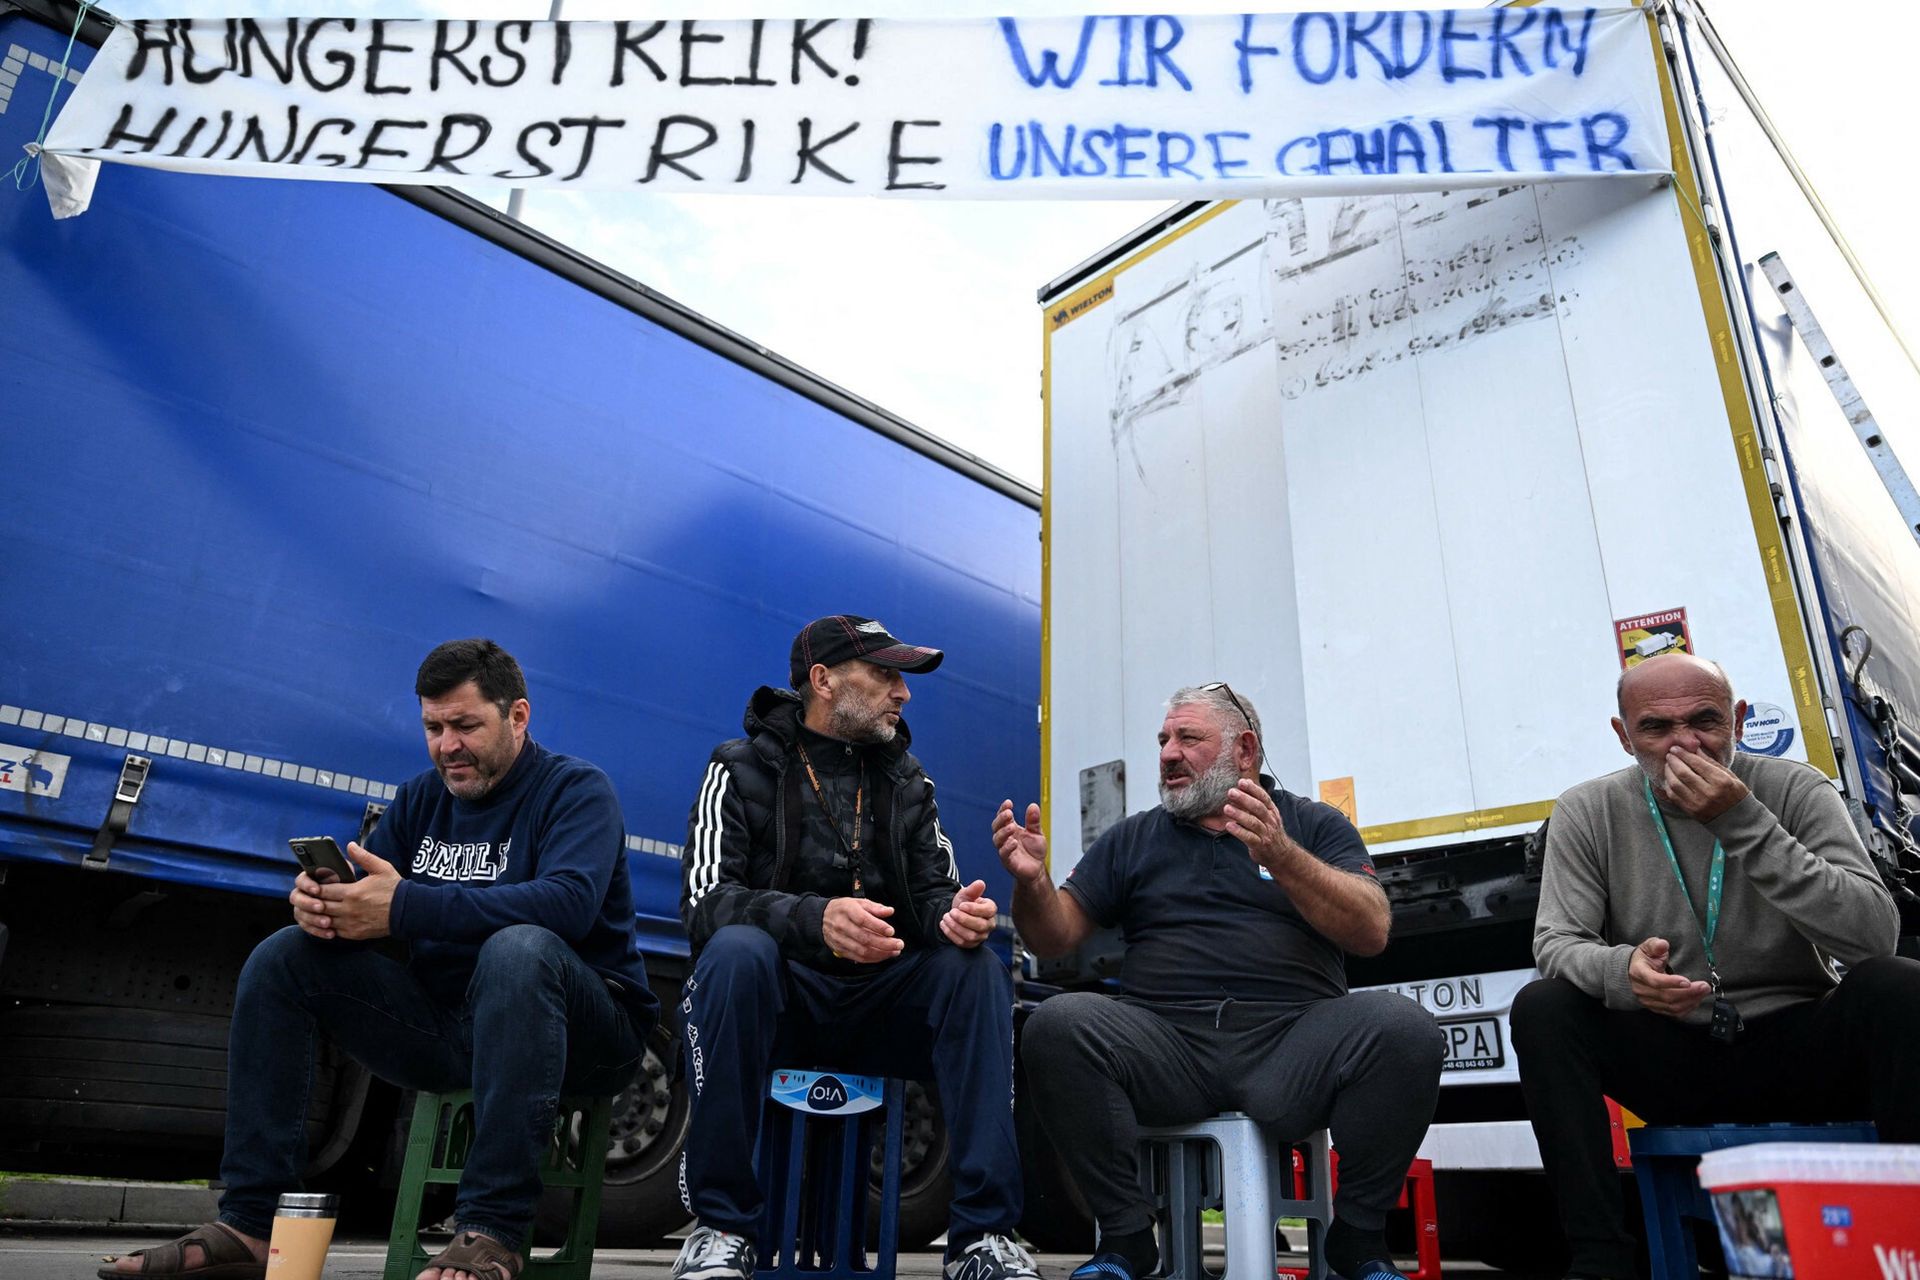 Kierowcy polskiej firmy strajkują. Tiry stoją. "Problem się rozleje"